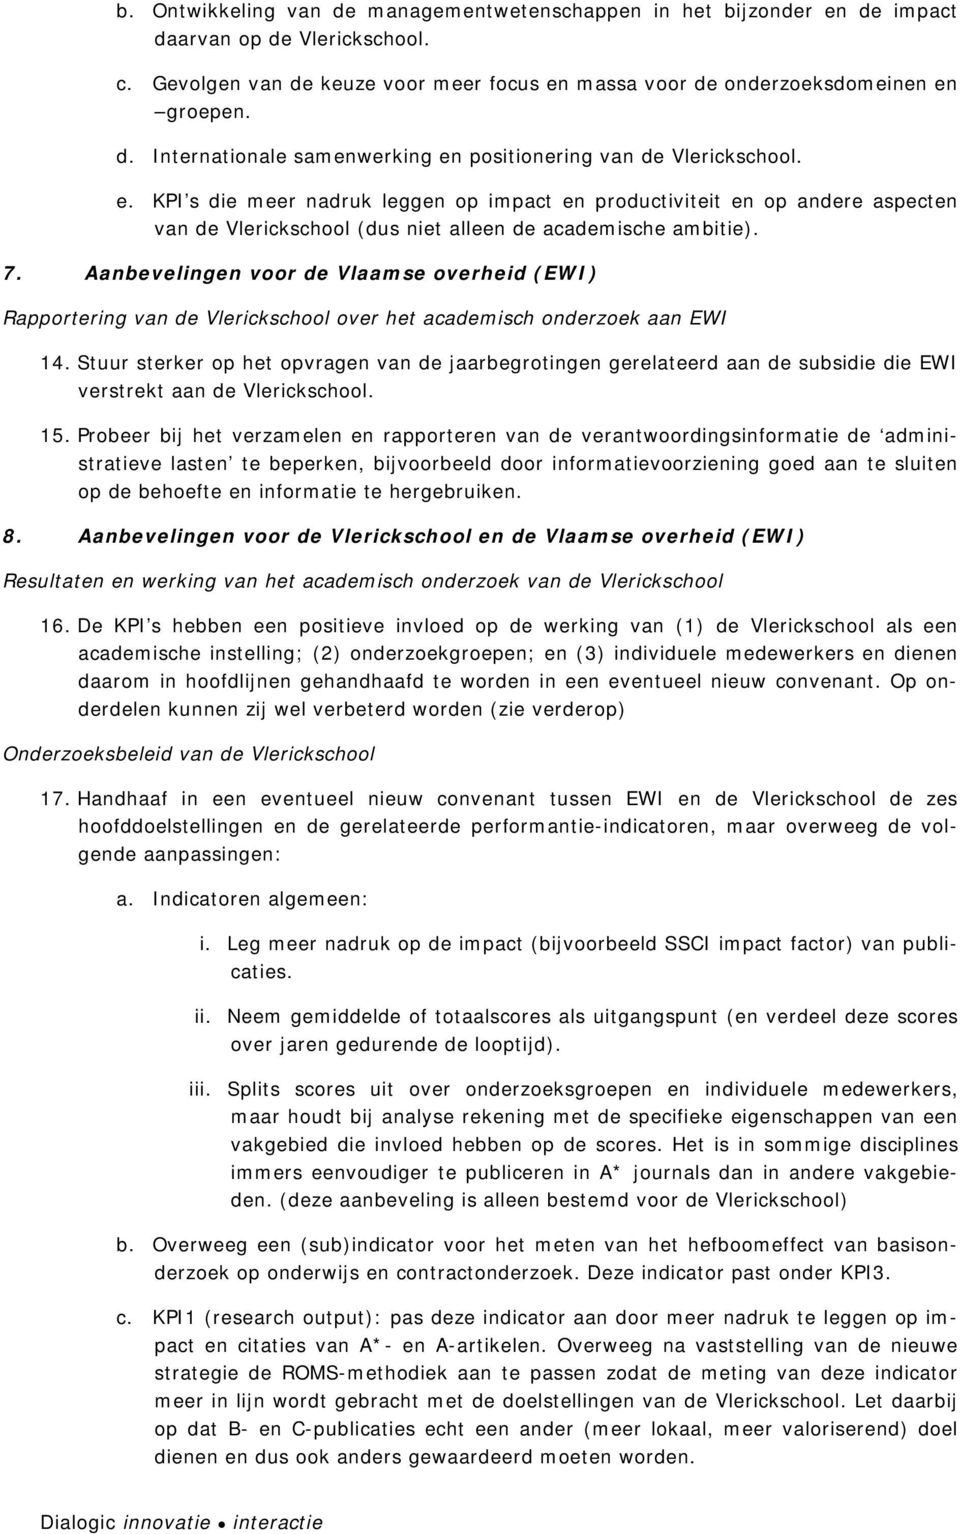 Aanbevelingen vr de Vlaamse verheid (EWI) Rapprtering van de Vlerickschl ver het academisch nderzek aan EWI 14.